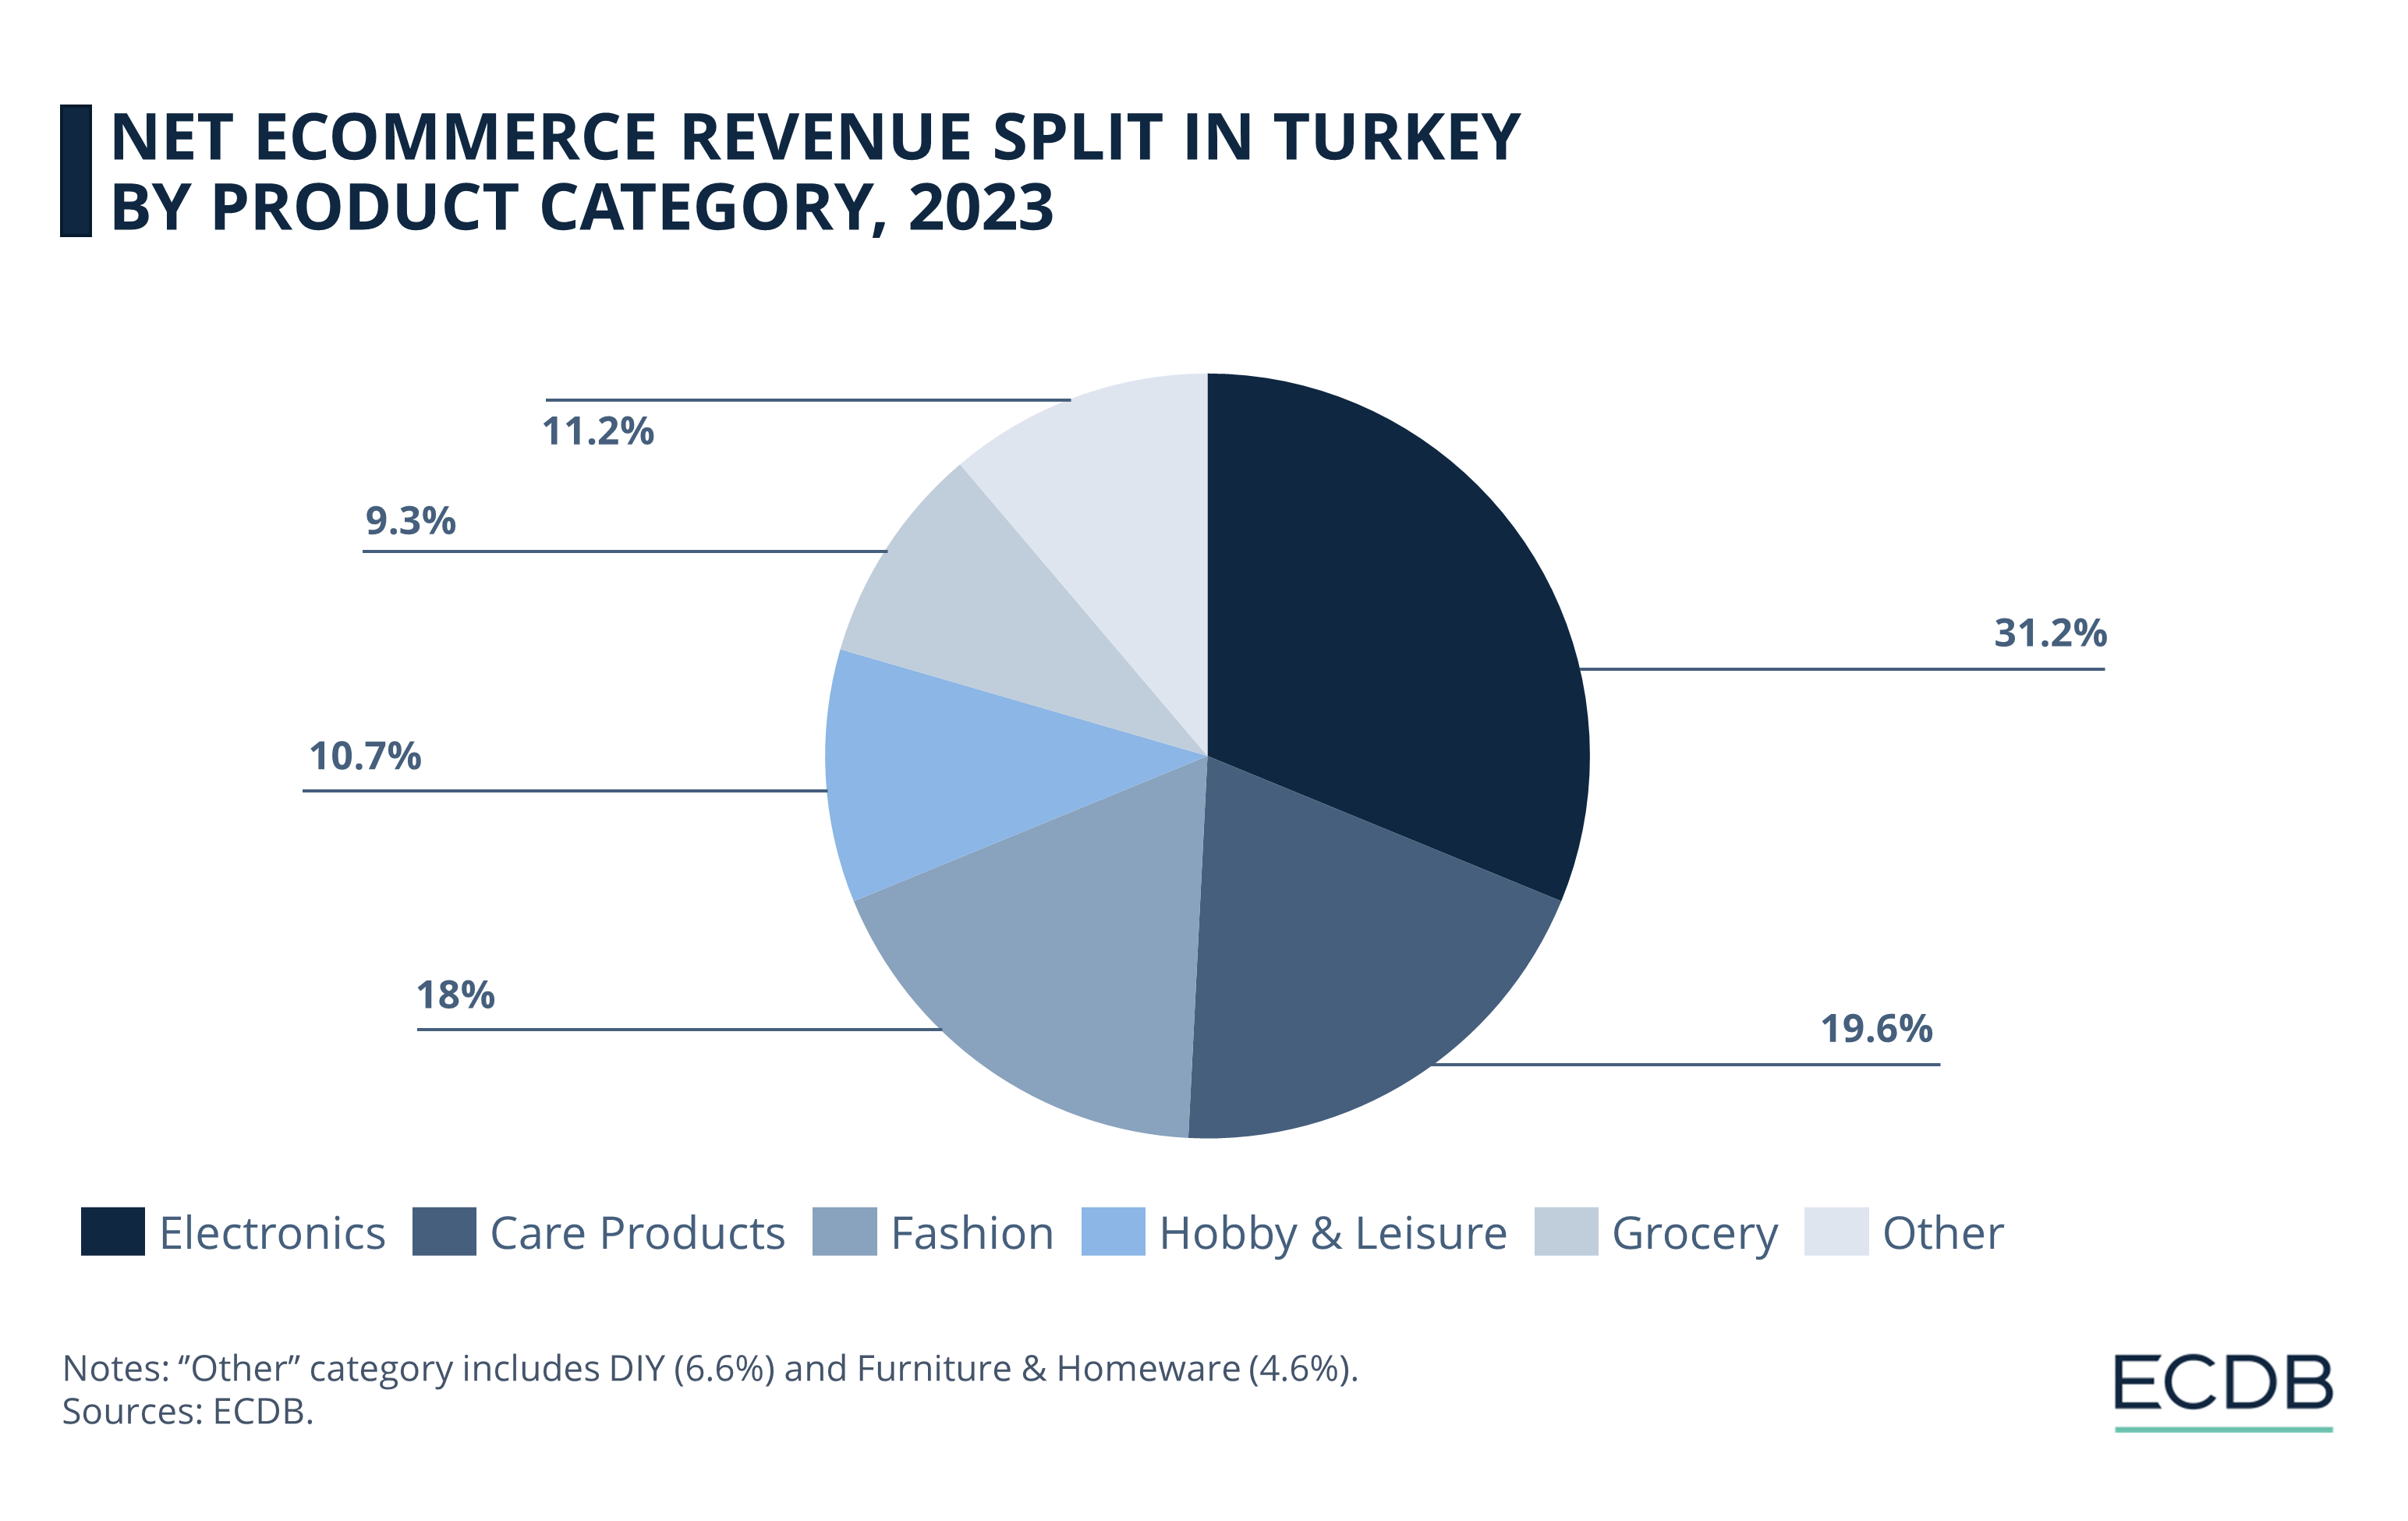 Net eCommerce Revenue Split in Turkey by Product Category, 2023